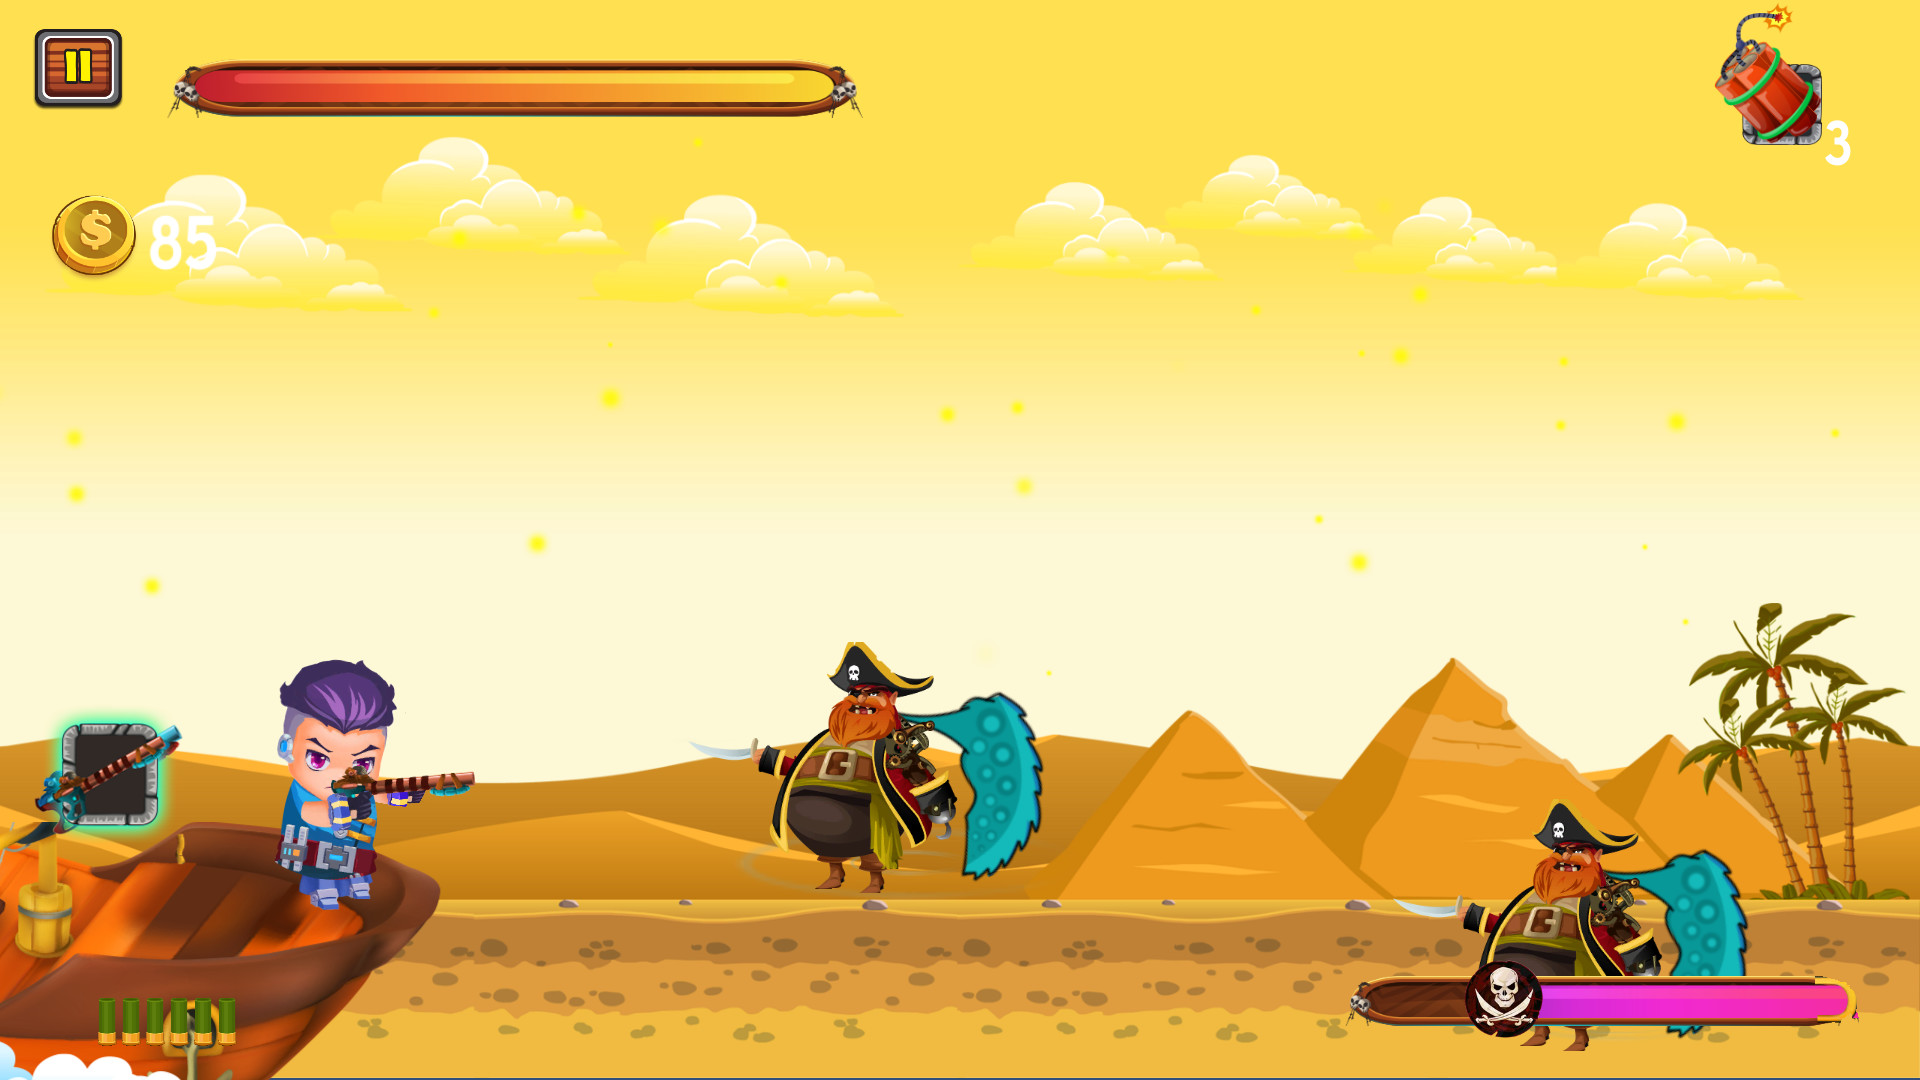 Captain vs Sky Pirates - Pyramids screenshot